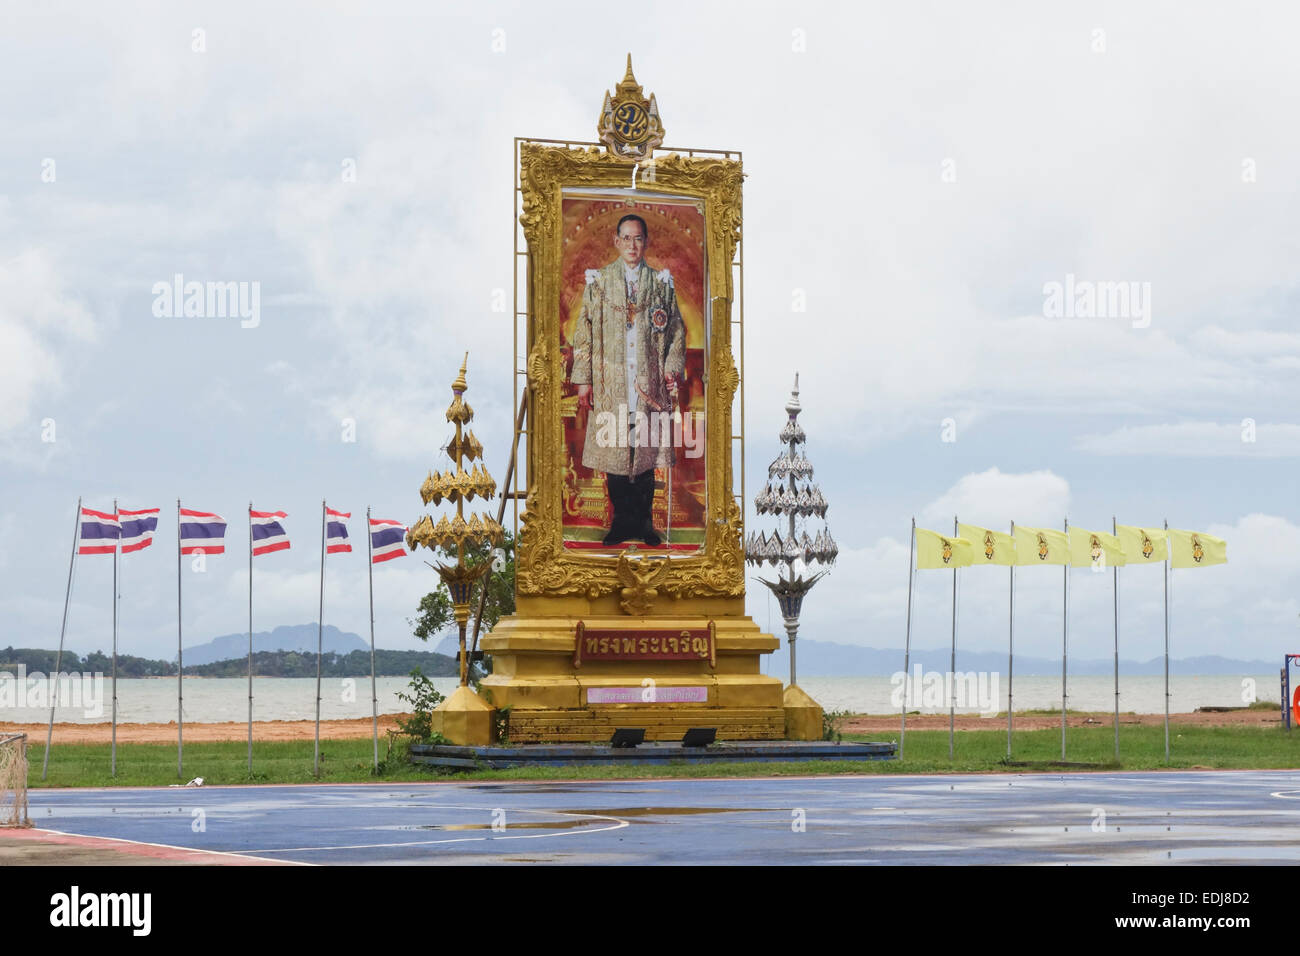 Ritratto di Re Bhumibol Adulyadej sul display per King's Day, Thailandia Koh Lanta, Provincia di Krabi, sud-est asiatico. Foto Stock